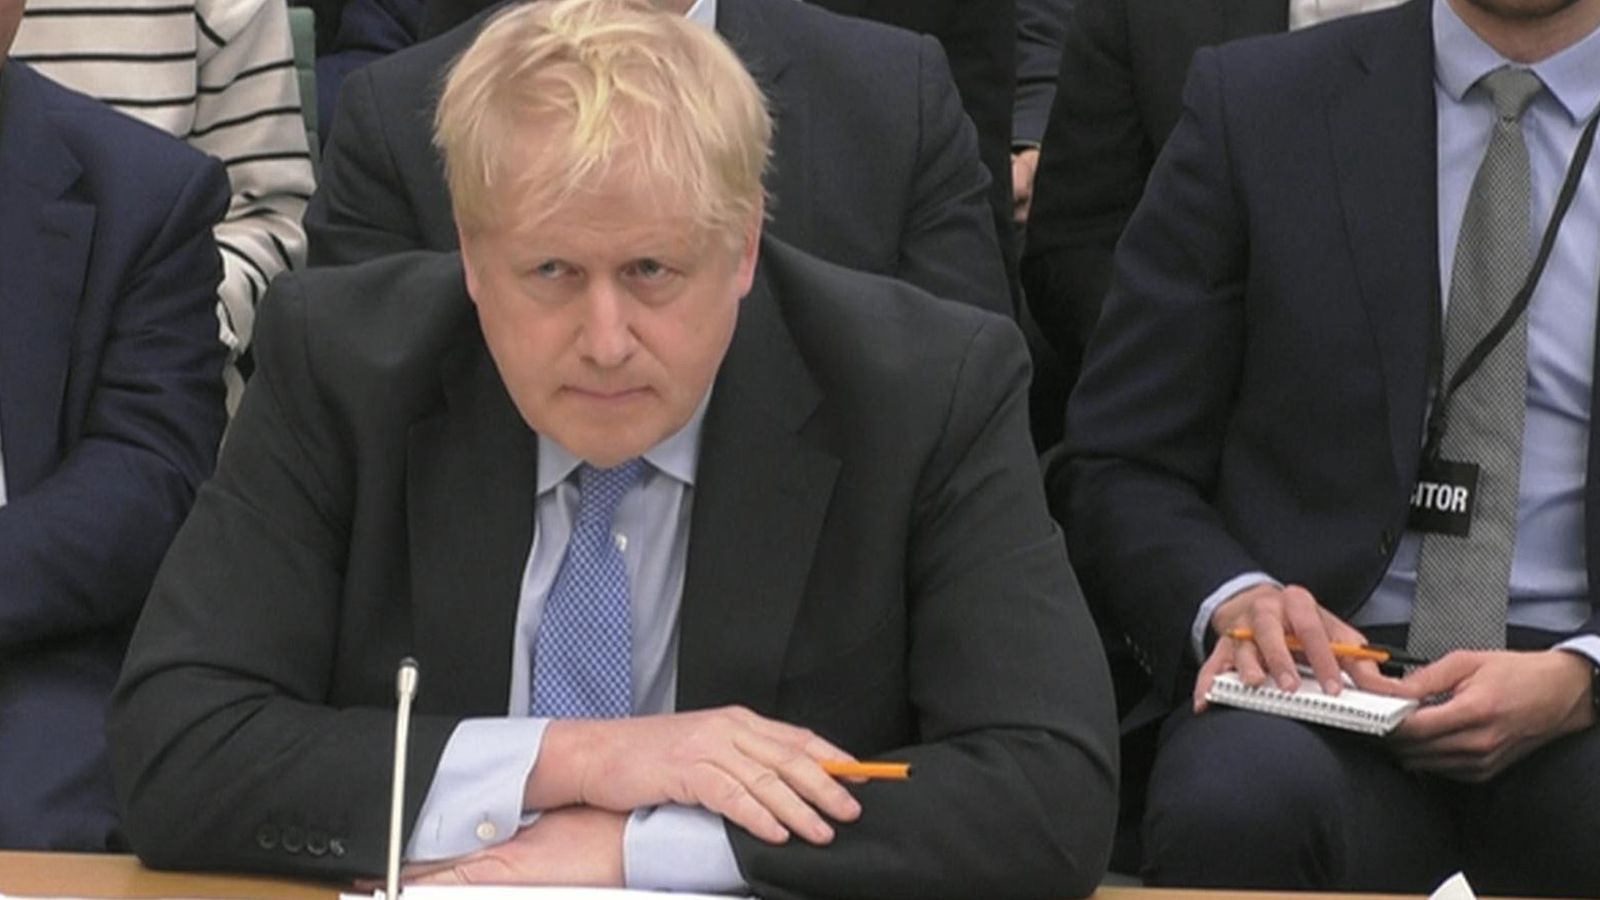 Boris Johnson blasts 'bizarre and unacceptable' new claims he broke COVID lockdown rules